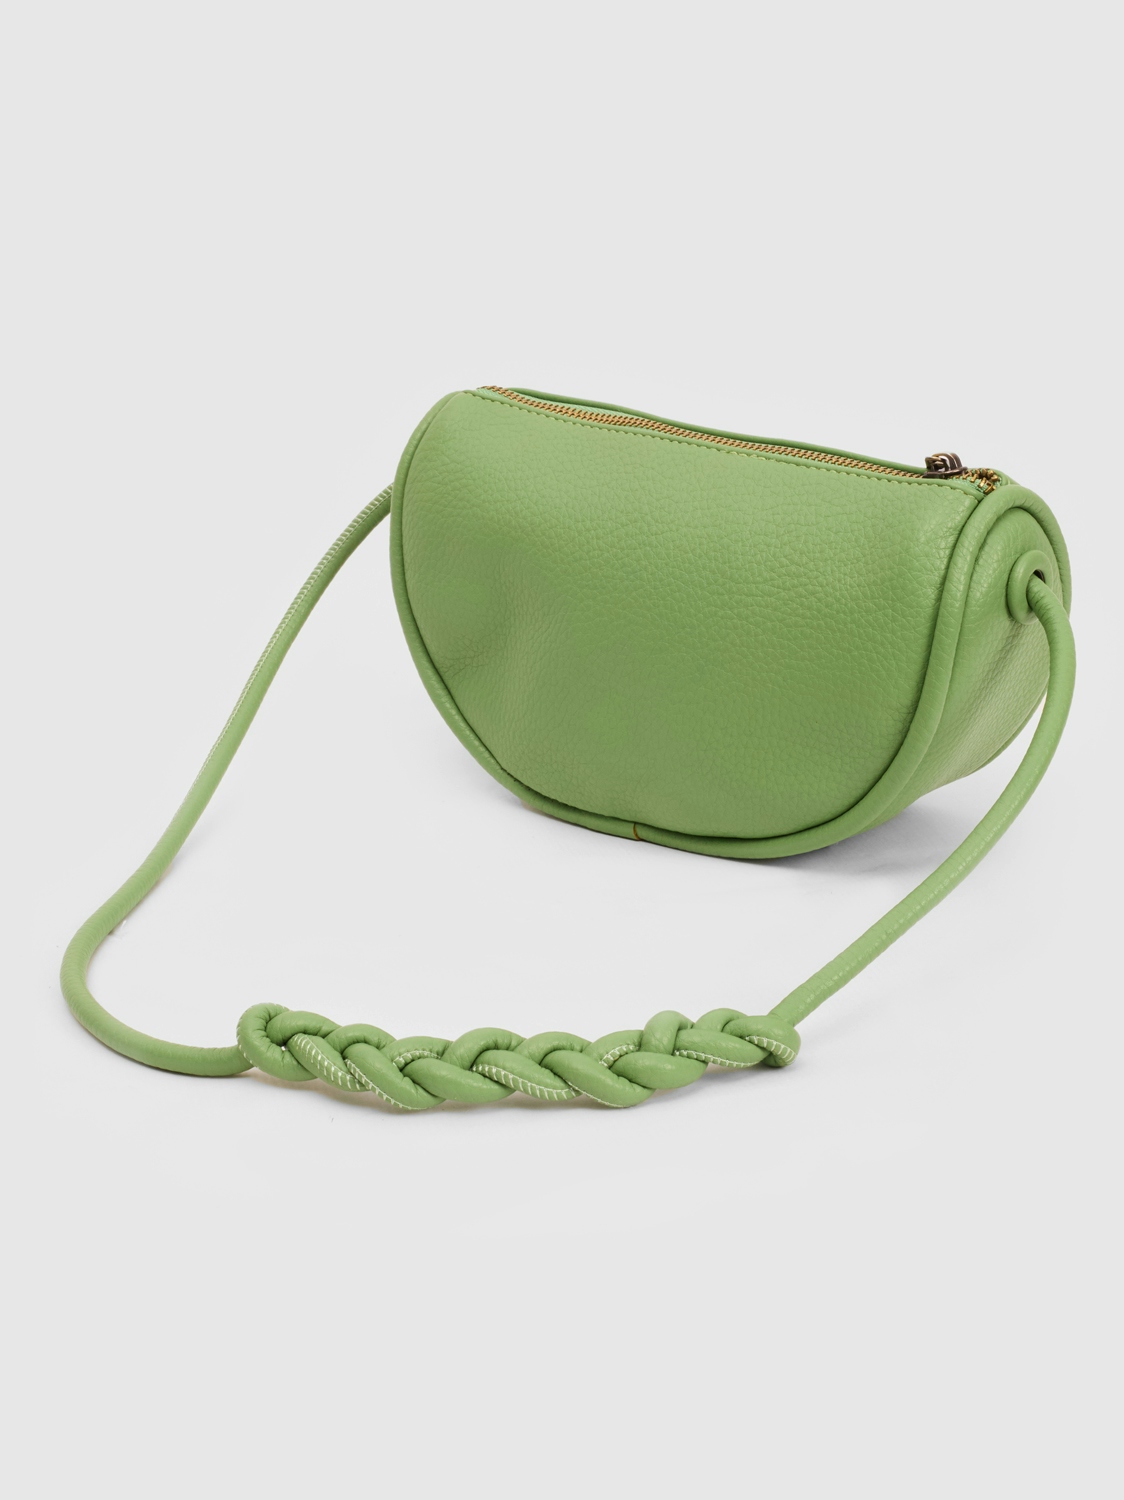 Eco-leather handbag